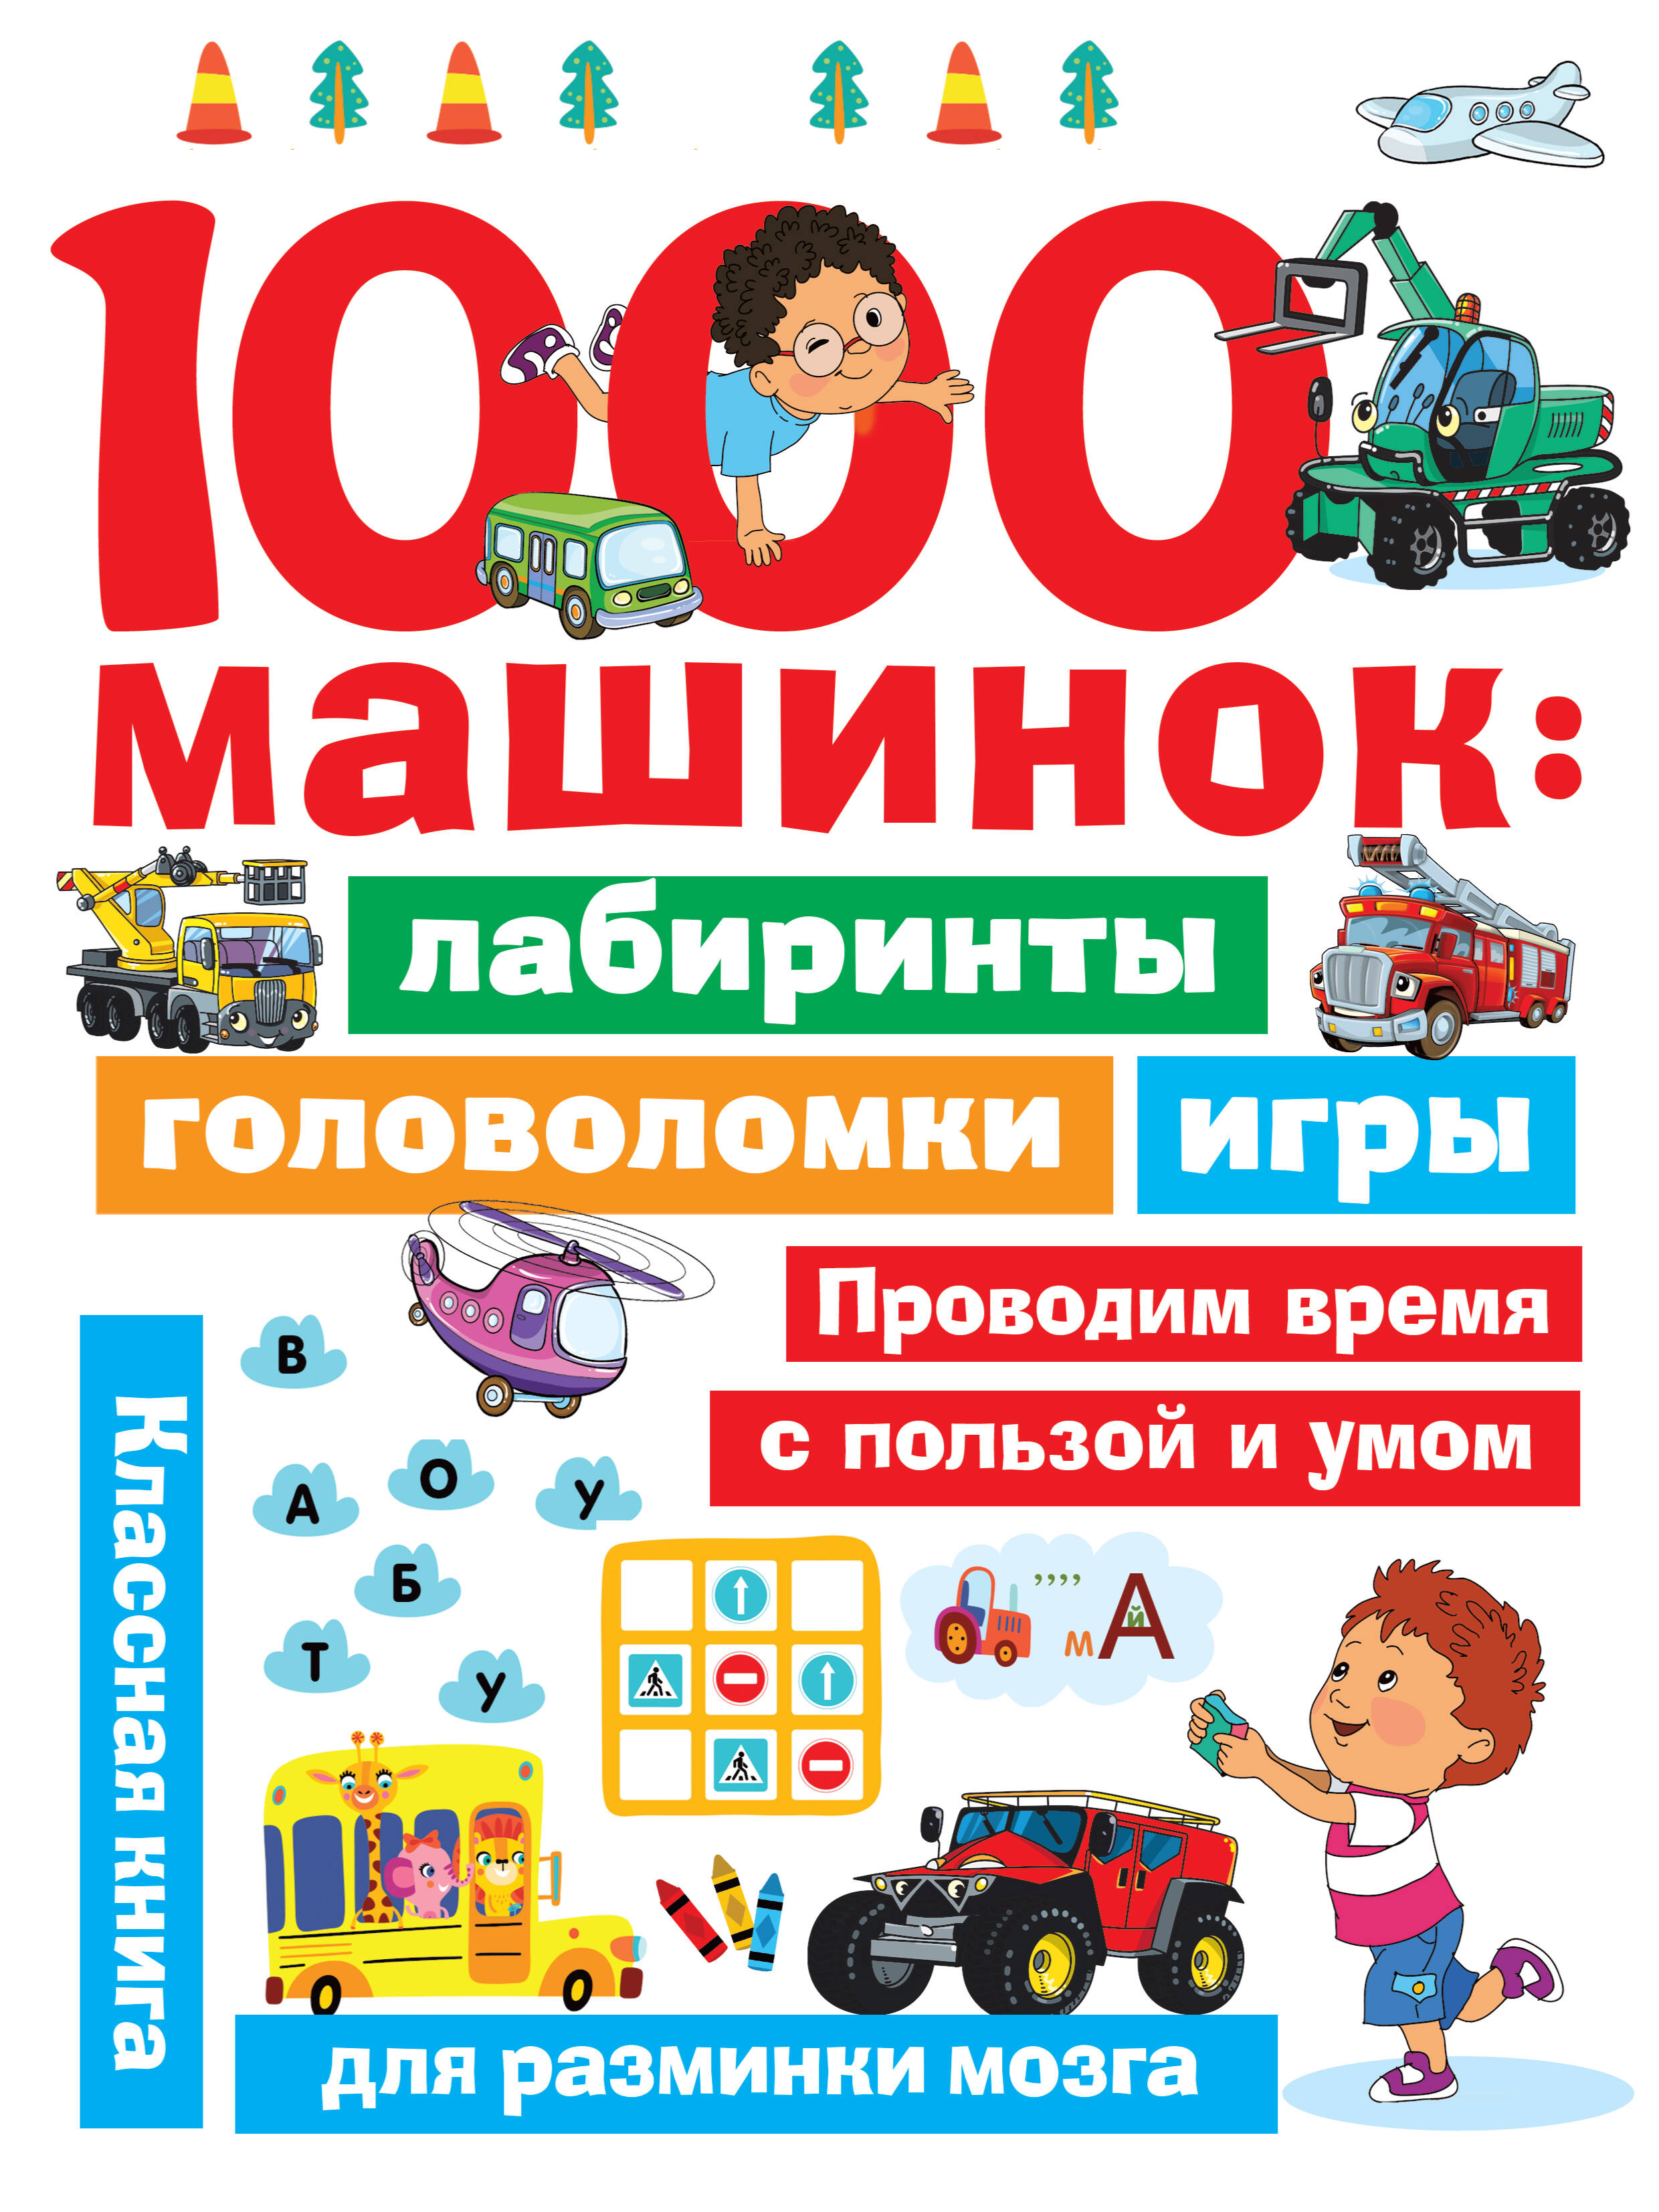 Дмитриева Валентина Геннадьевна 1000 машинок: лабиринты, головоломки, игры занимательные лабиринты развиваем внимание